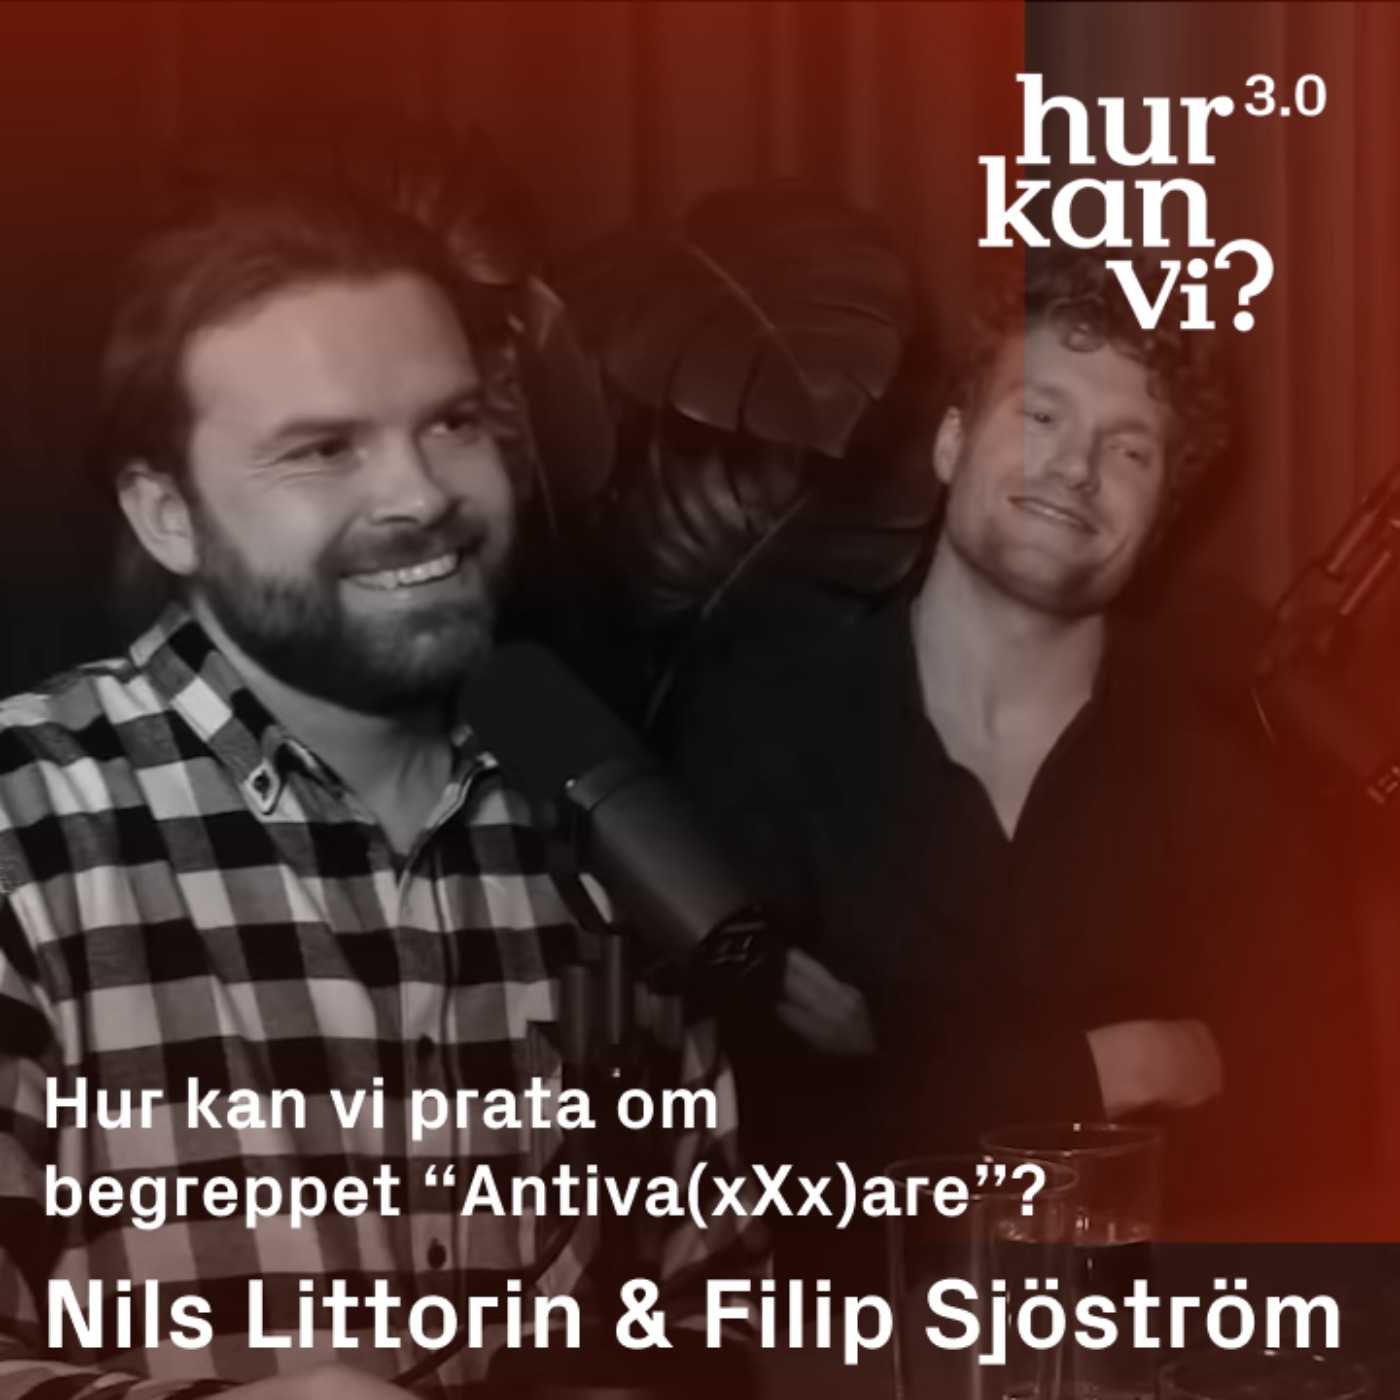 Nils Littorin & Filip Sjöström - DEL 2 - Hur kan vi prata om begreppet “Antiva(xXx)are”?